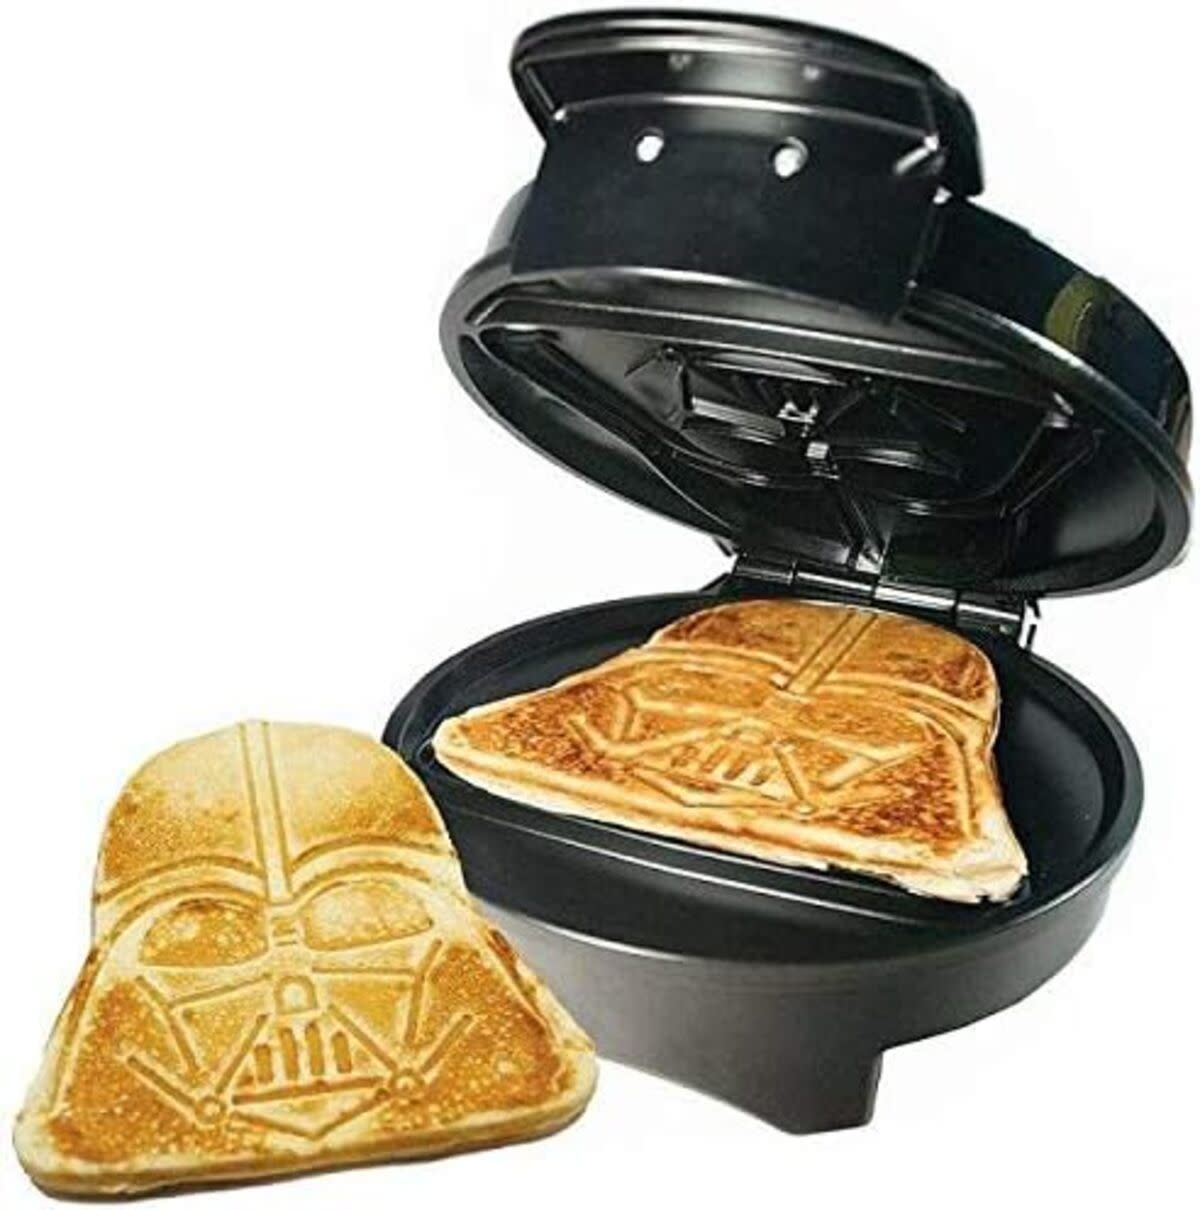 Uncanny Brands Darth Vader Waffle Maker